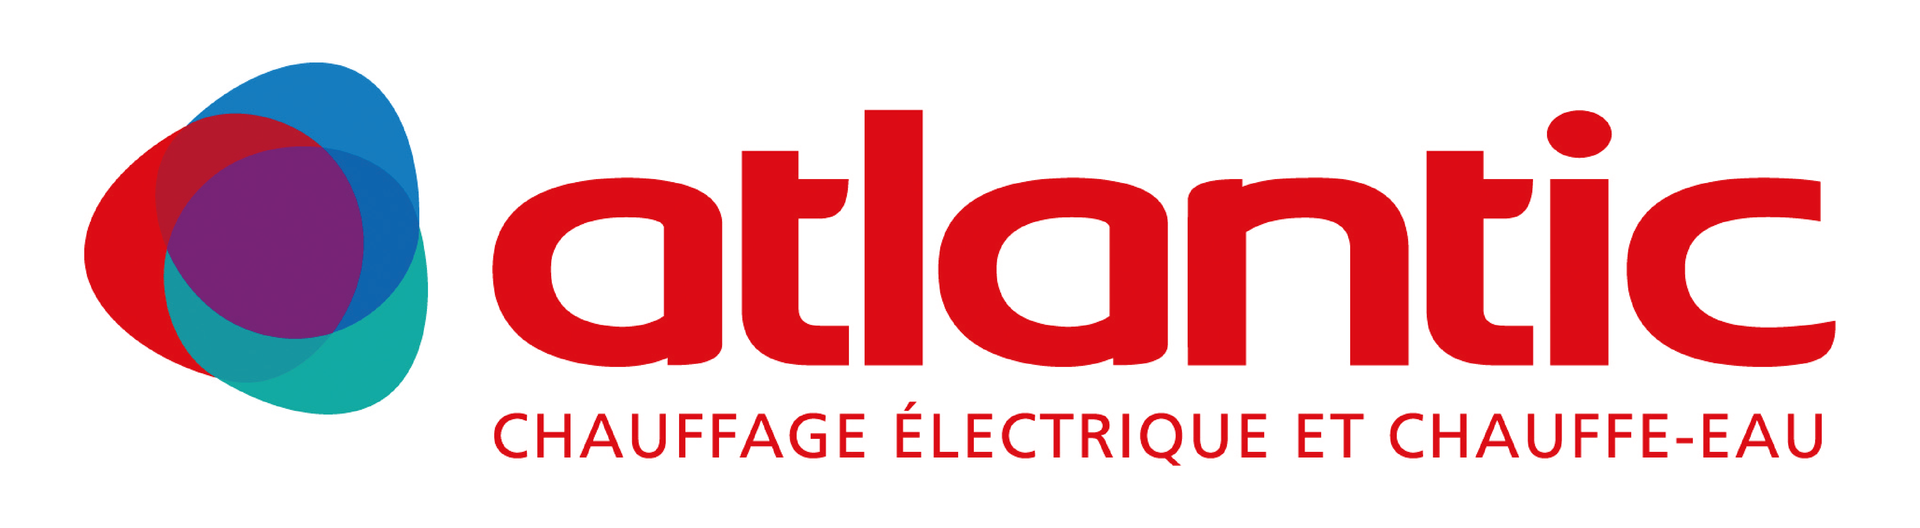 Logo marque Atlantic